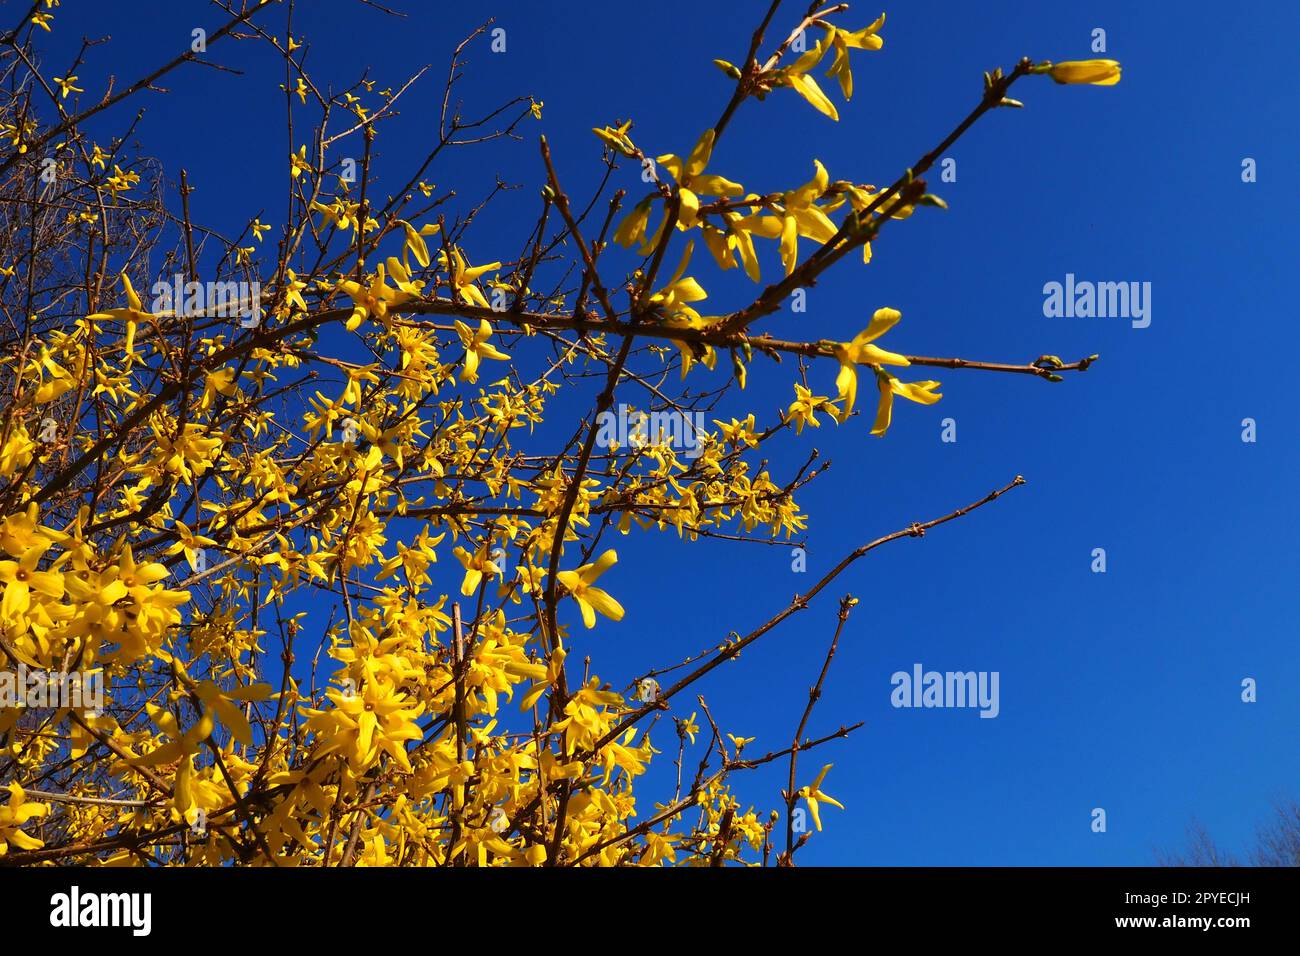 Forsythia ist eine Gattung von Sträuchern und kleinen Bäumen der Familie Oliven. Zahlreiche gelbe Blüten auf Zweigen und schießt gegen einen blauen Himmel. Lamiaceae Olive Family Gattung Forsythia Stockfoto